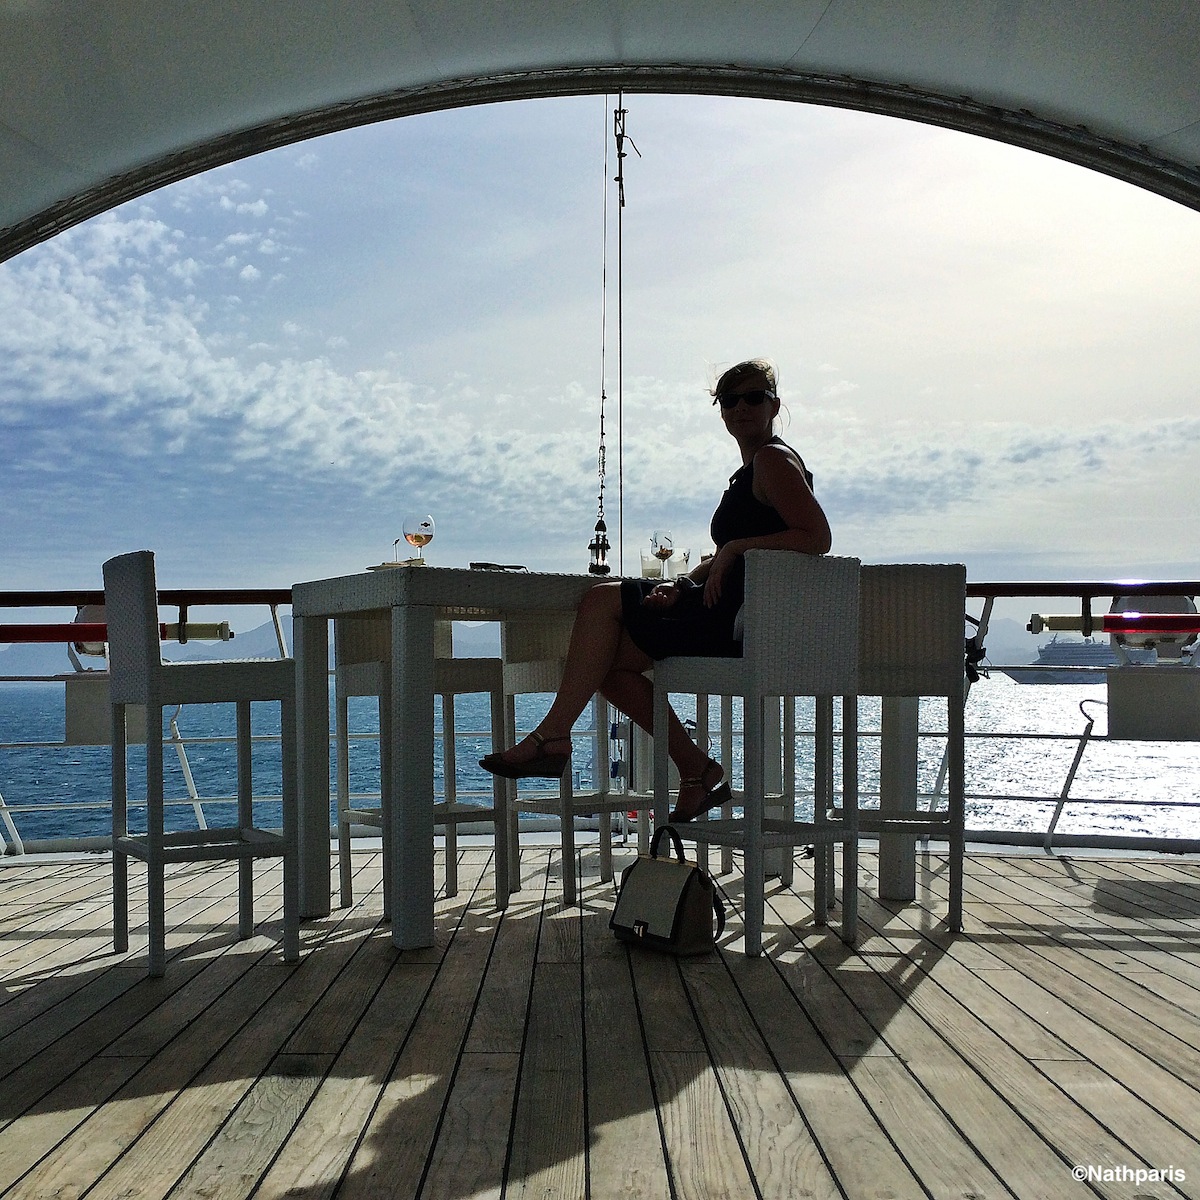 Petite pause sur le bateau Villa Schweppes – iPhone5S
Nathalie Geffroy